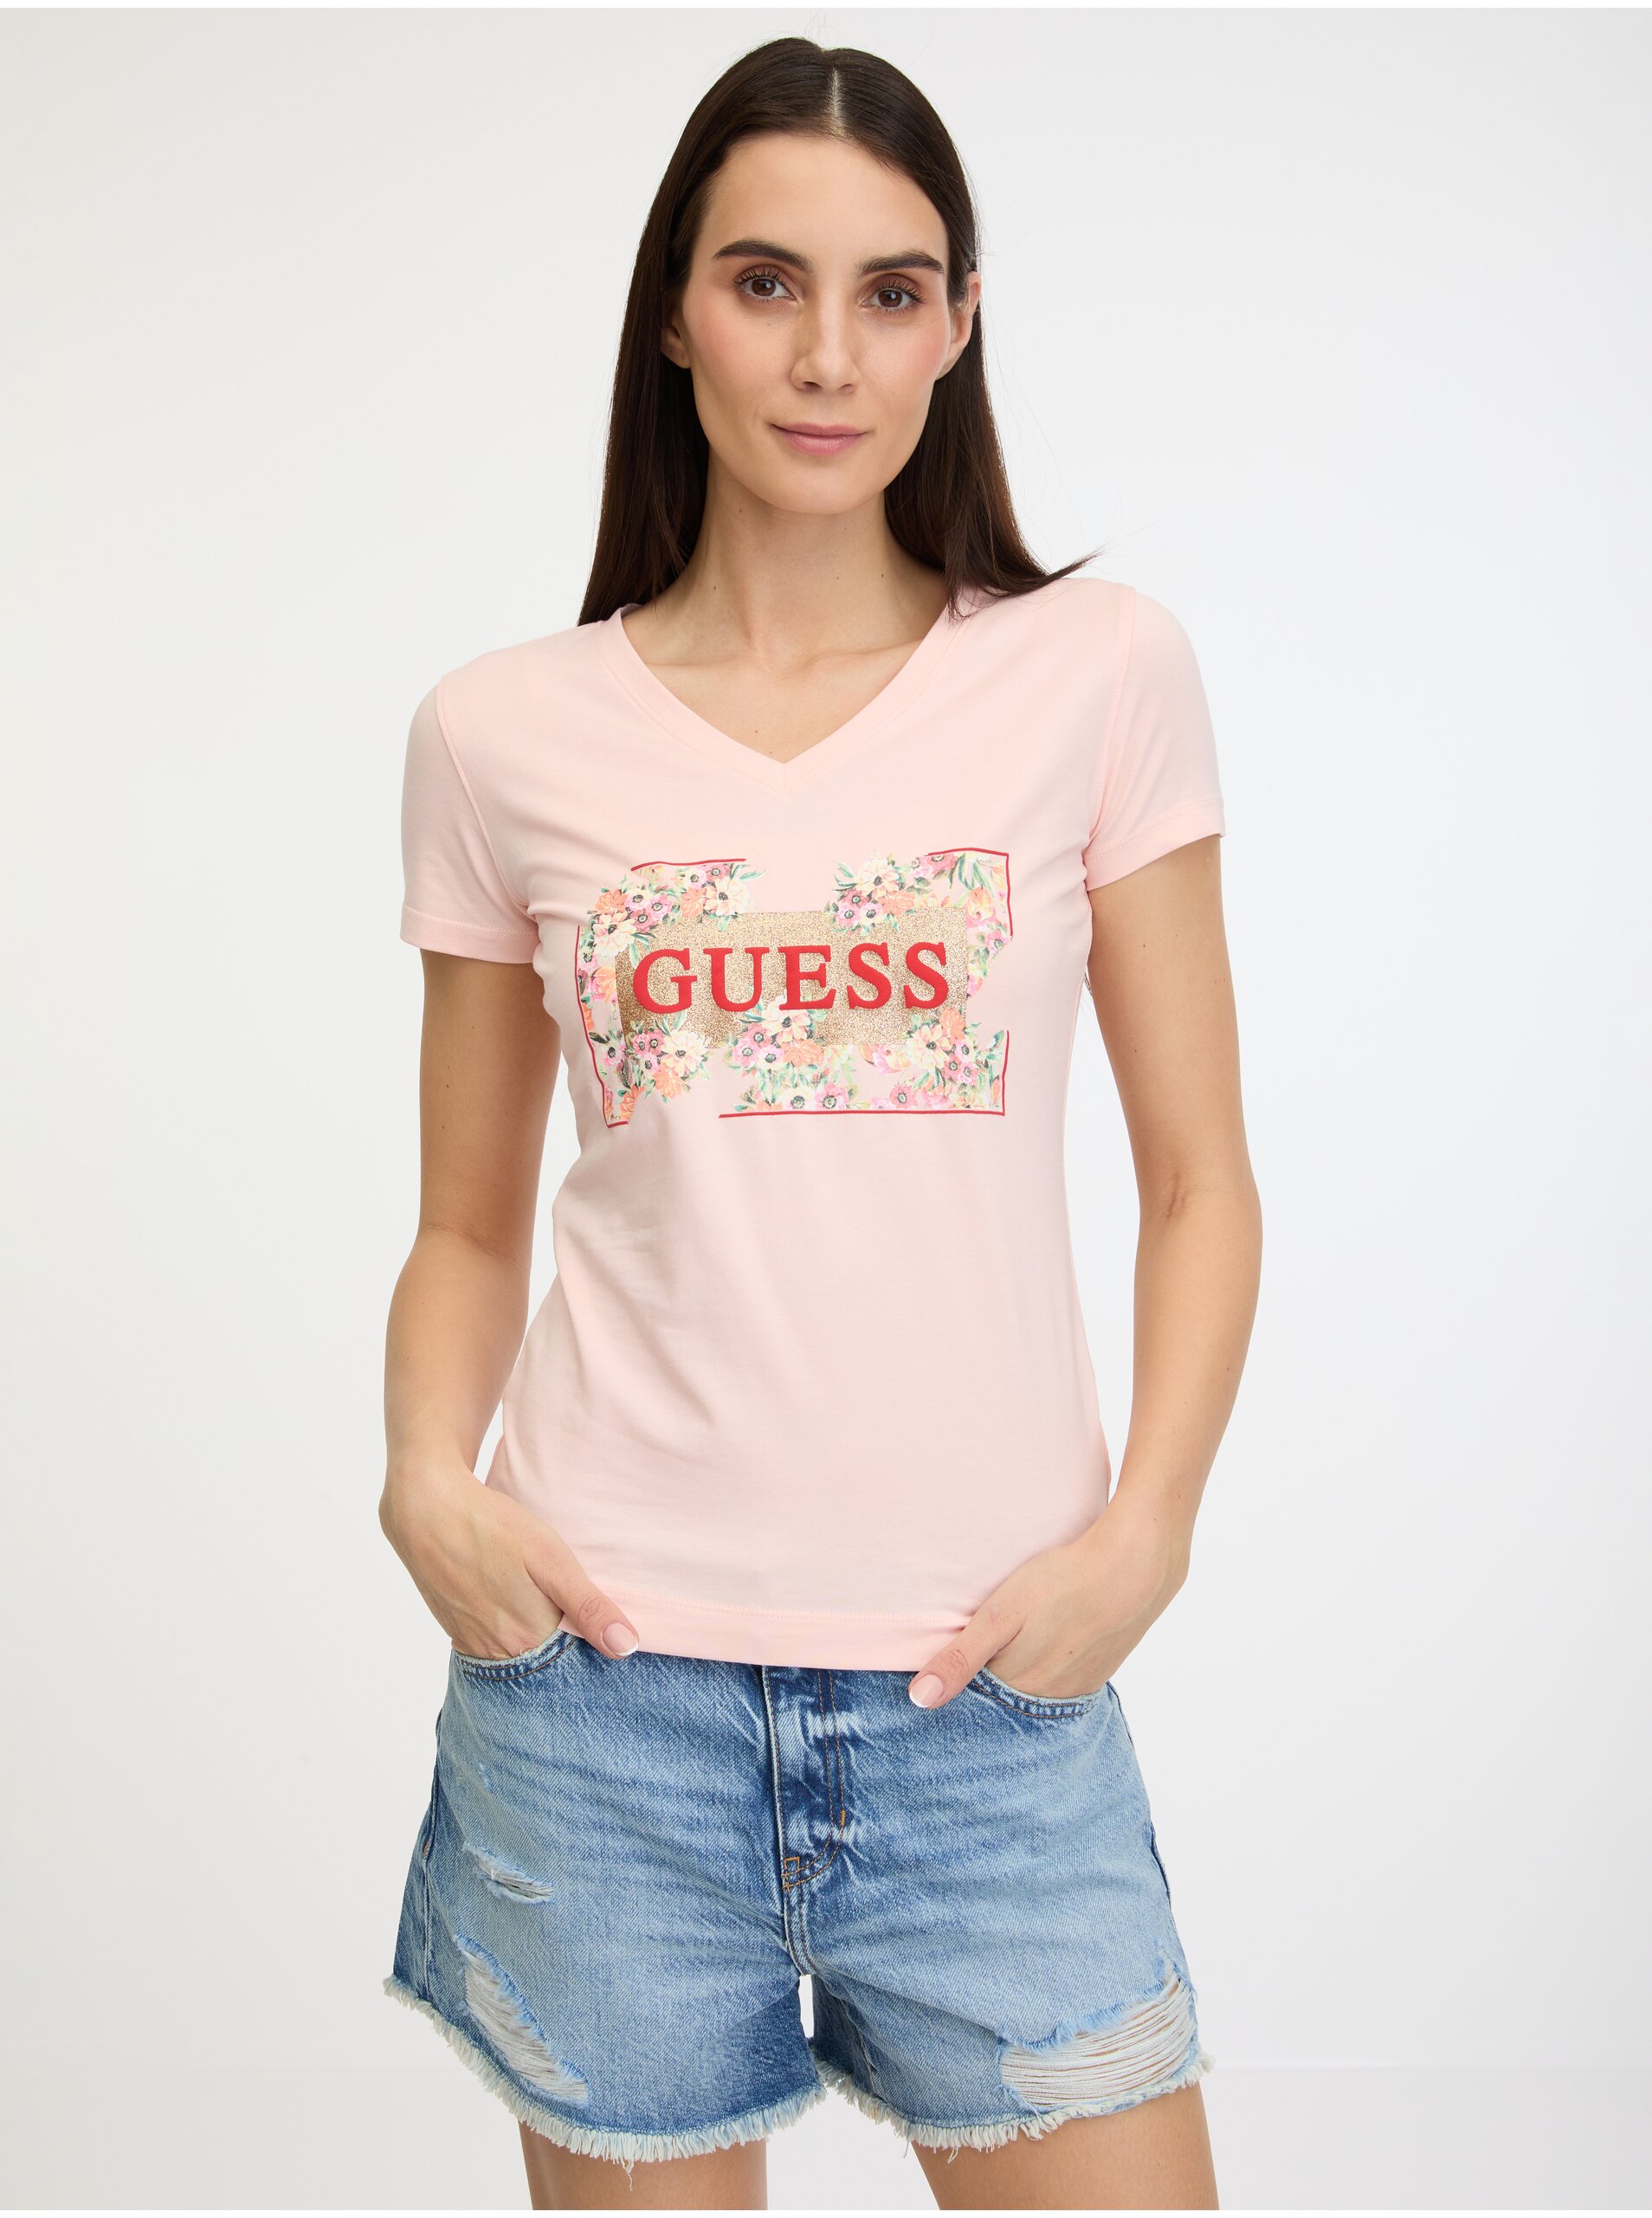 Lacno Svetloružové dámske tričko Guess Logo Flowers